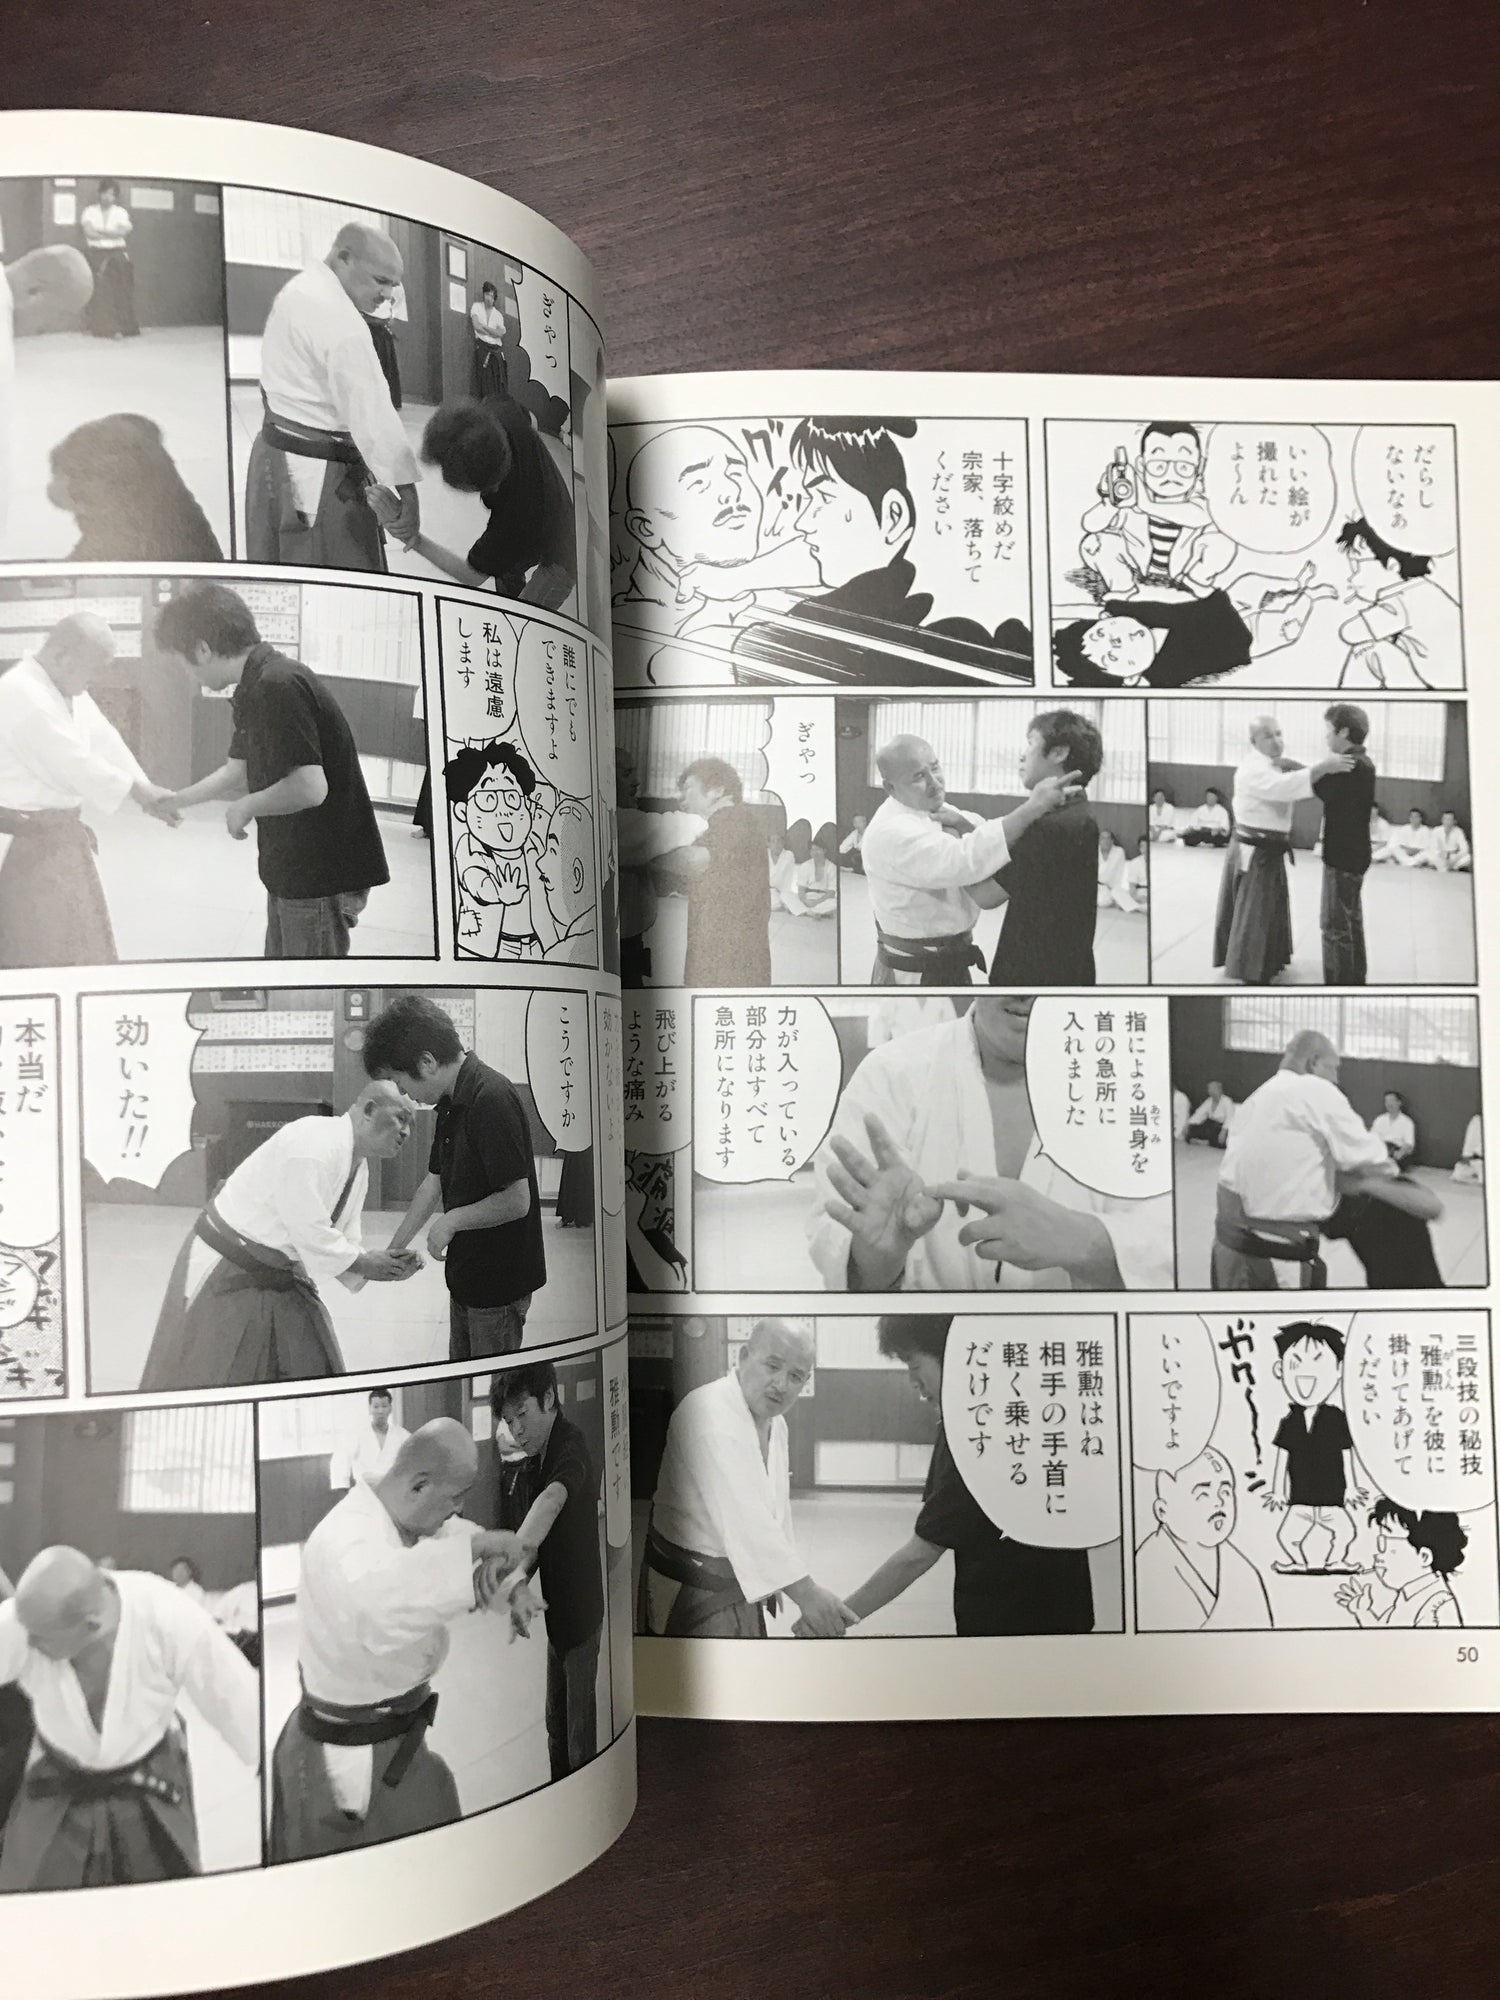 Mystery of Kobujutsu Book & DVD by Yoshinori Kono (Preowned) - Budovideos Inc